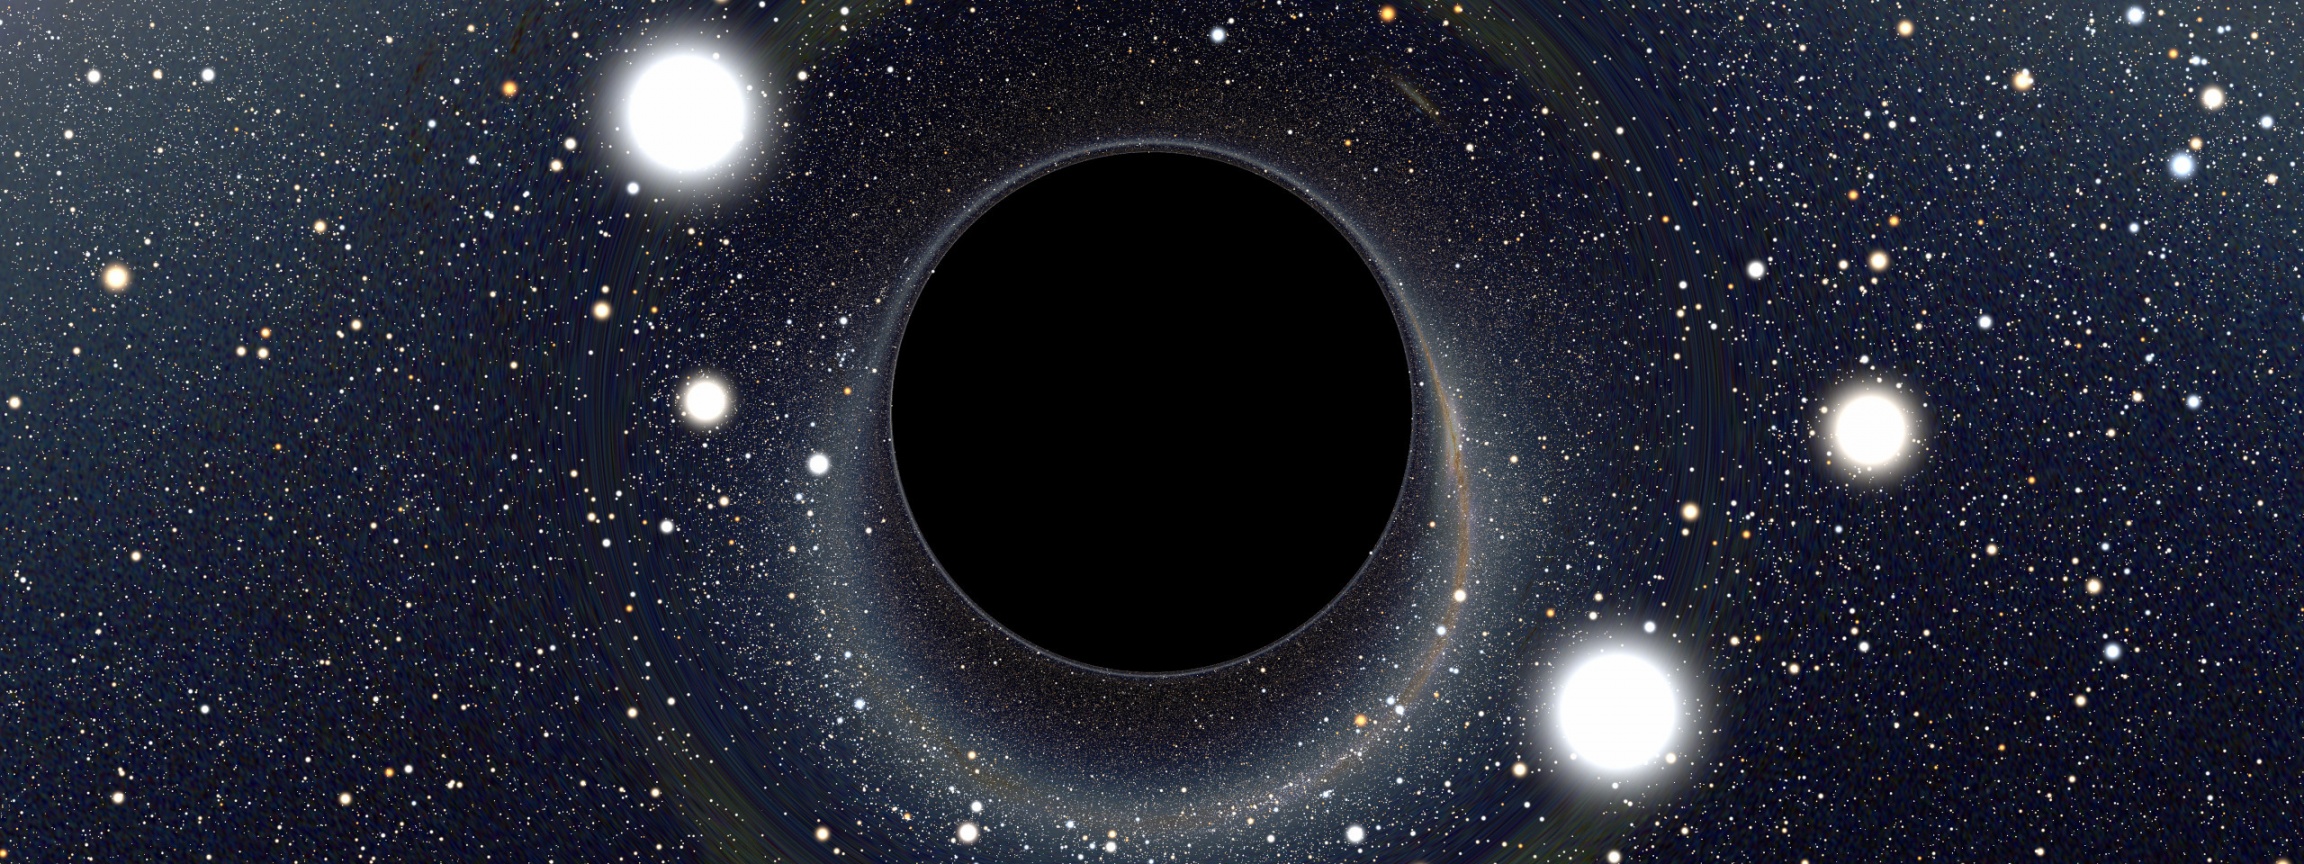 Black Hole Nasa